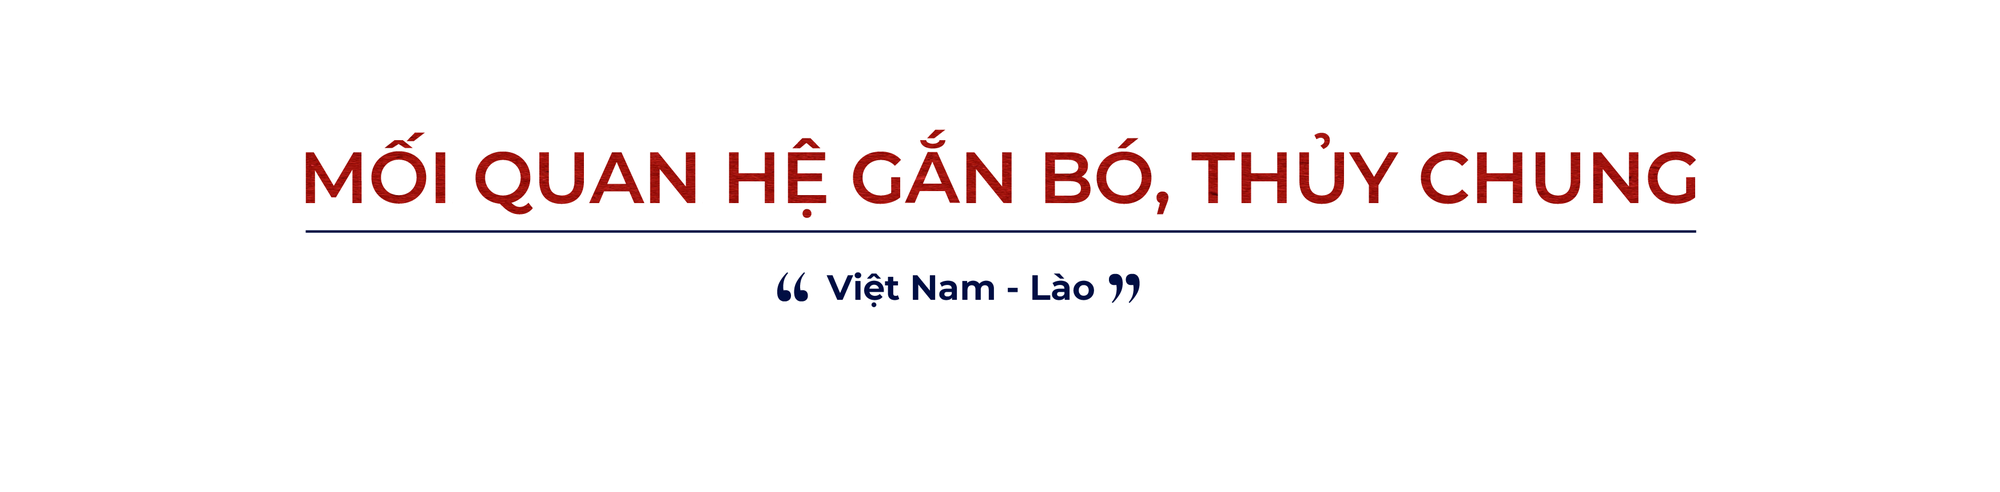 Quan hệ hữu nghị Việt - Lào 'có một không hai' trên thế giới